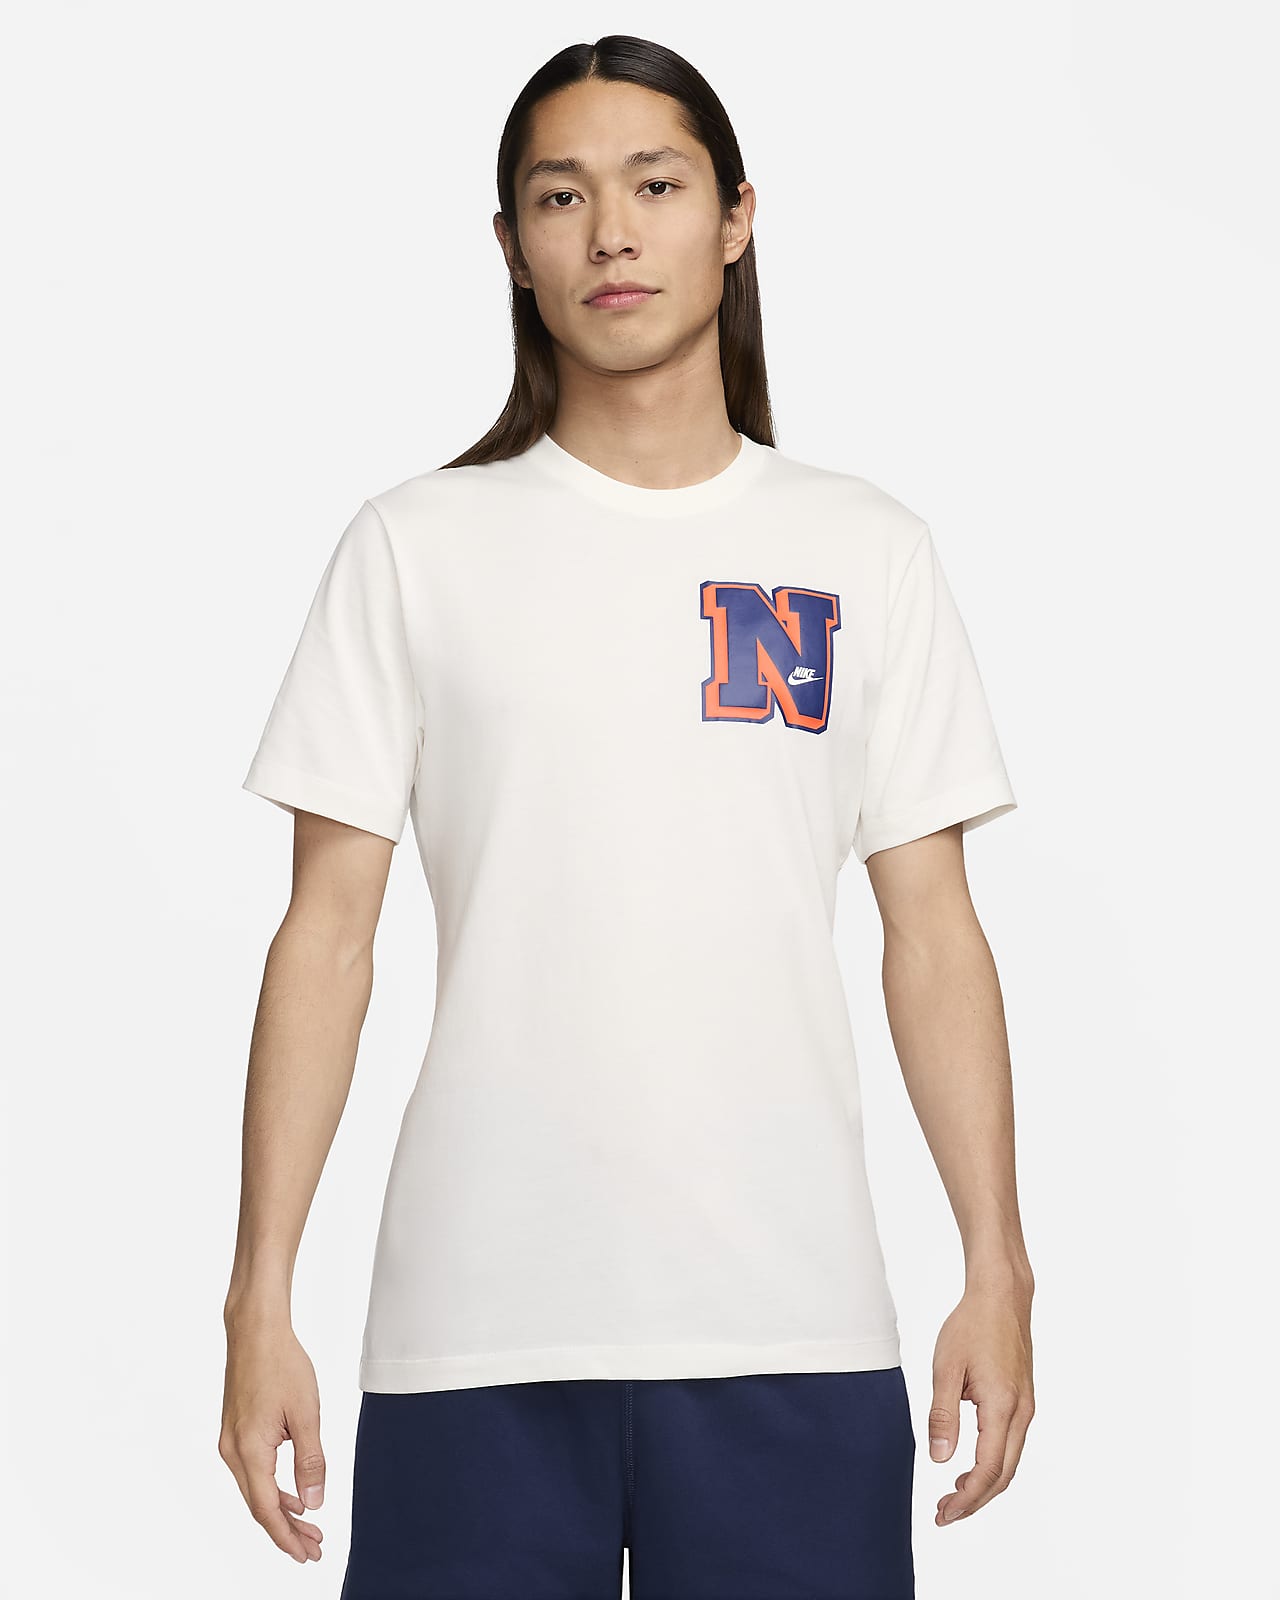 Nike Sportswear 男款 T 恤